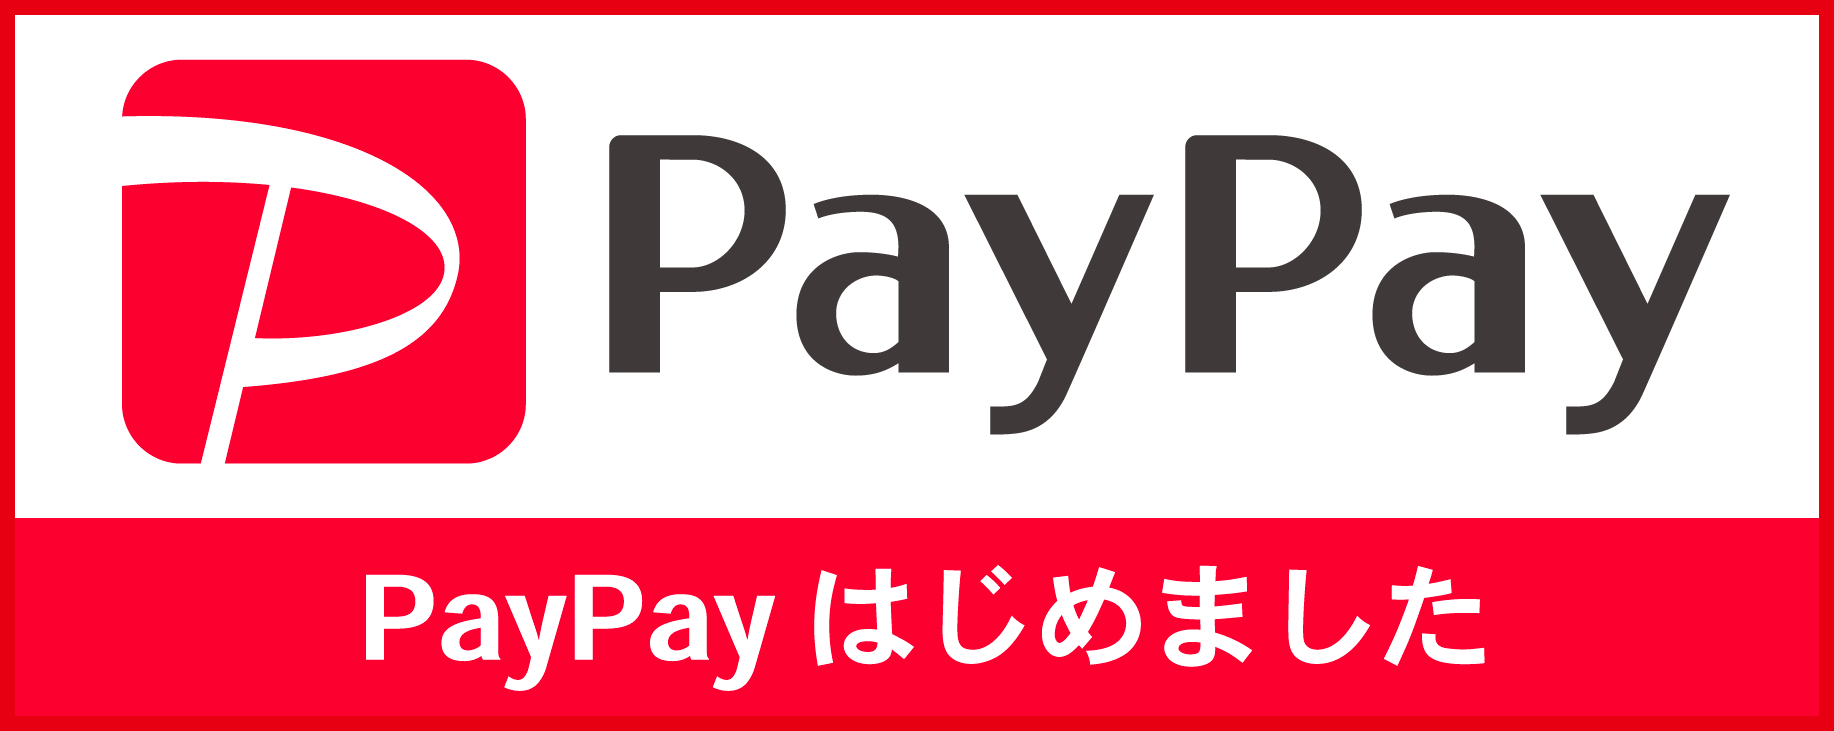 PayPayはじめました。ぱyぱyでのお支払い可能